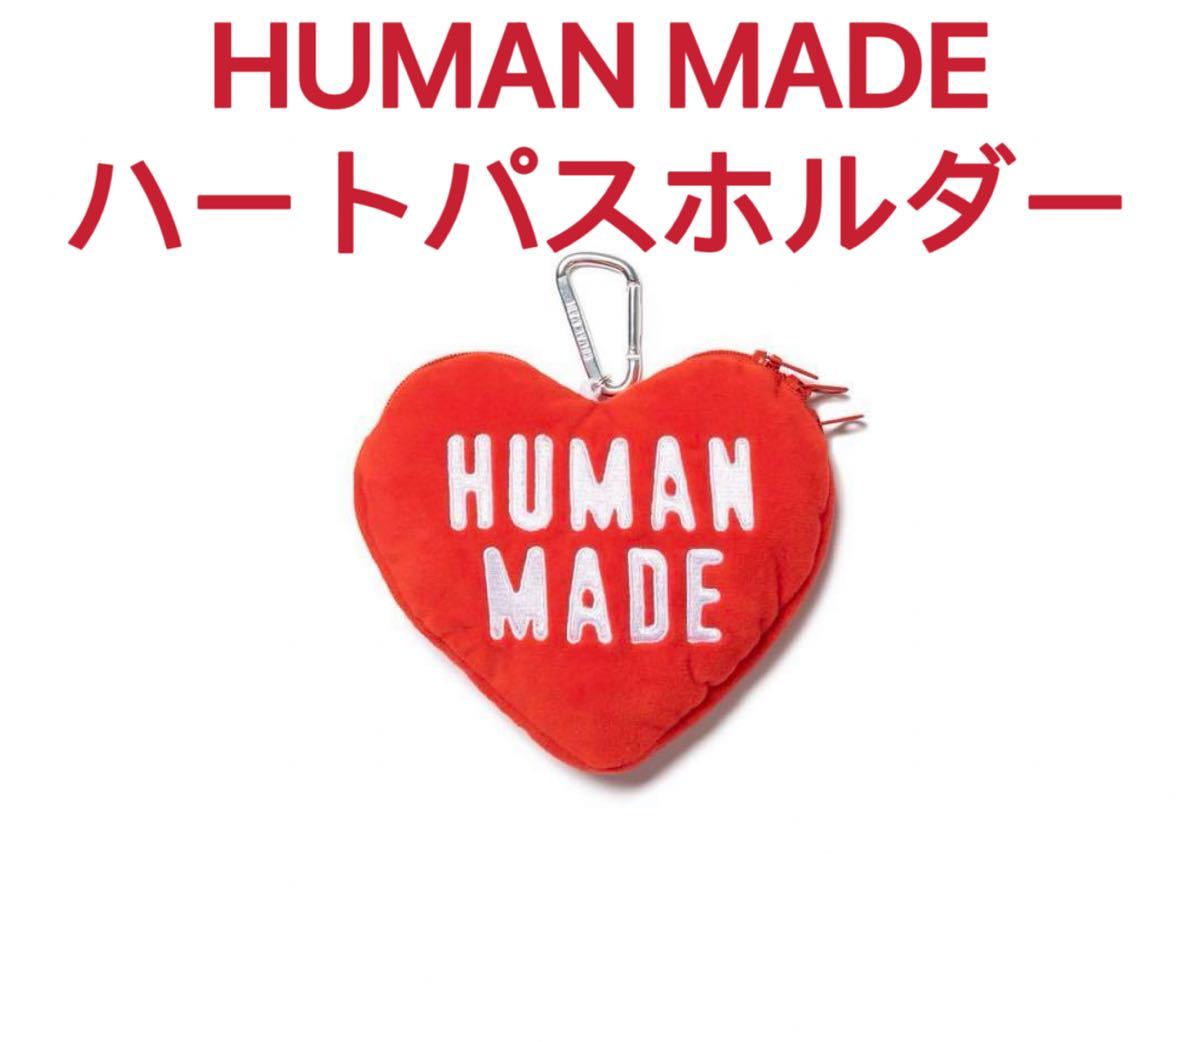 HUMAN MADE ハートパスホルダー パスケース 新品 未開封 未使用 国内正規品 HEART 心 ケース 小物 定期入れ